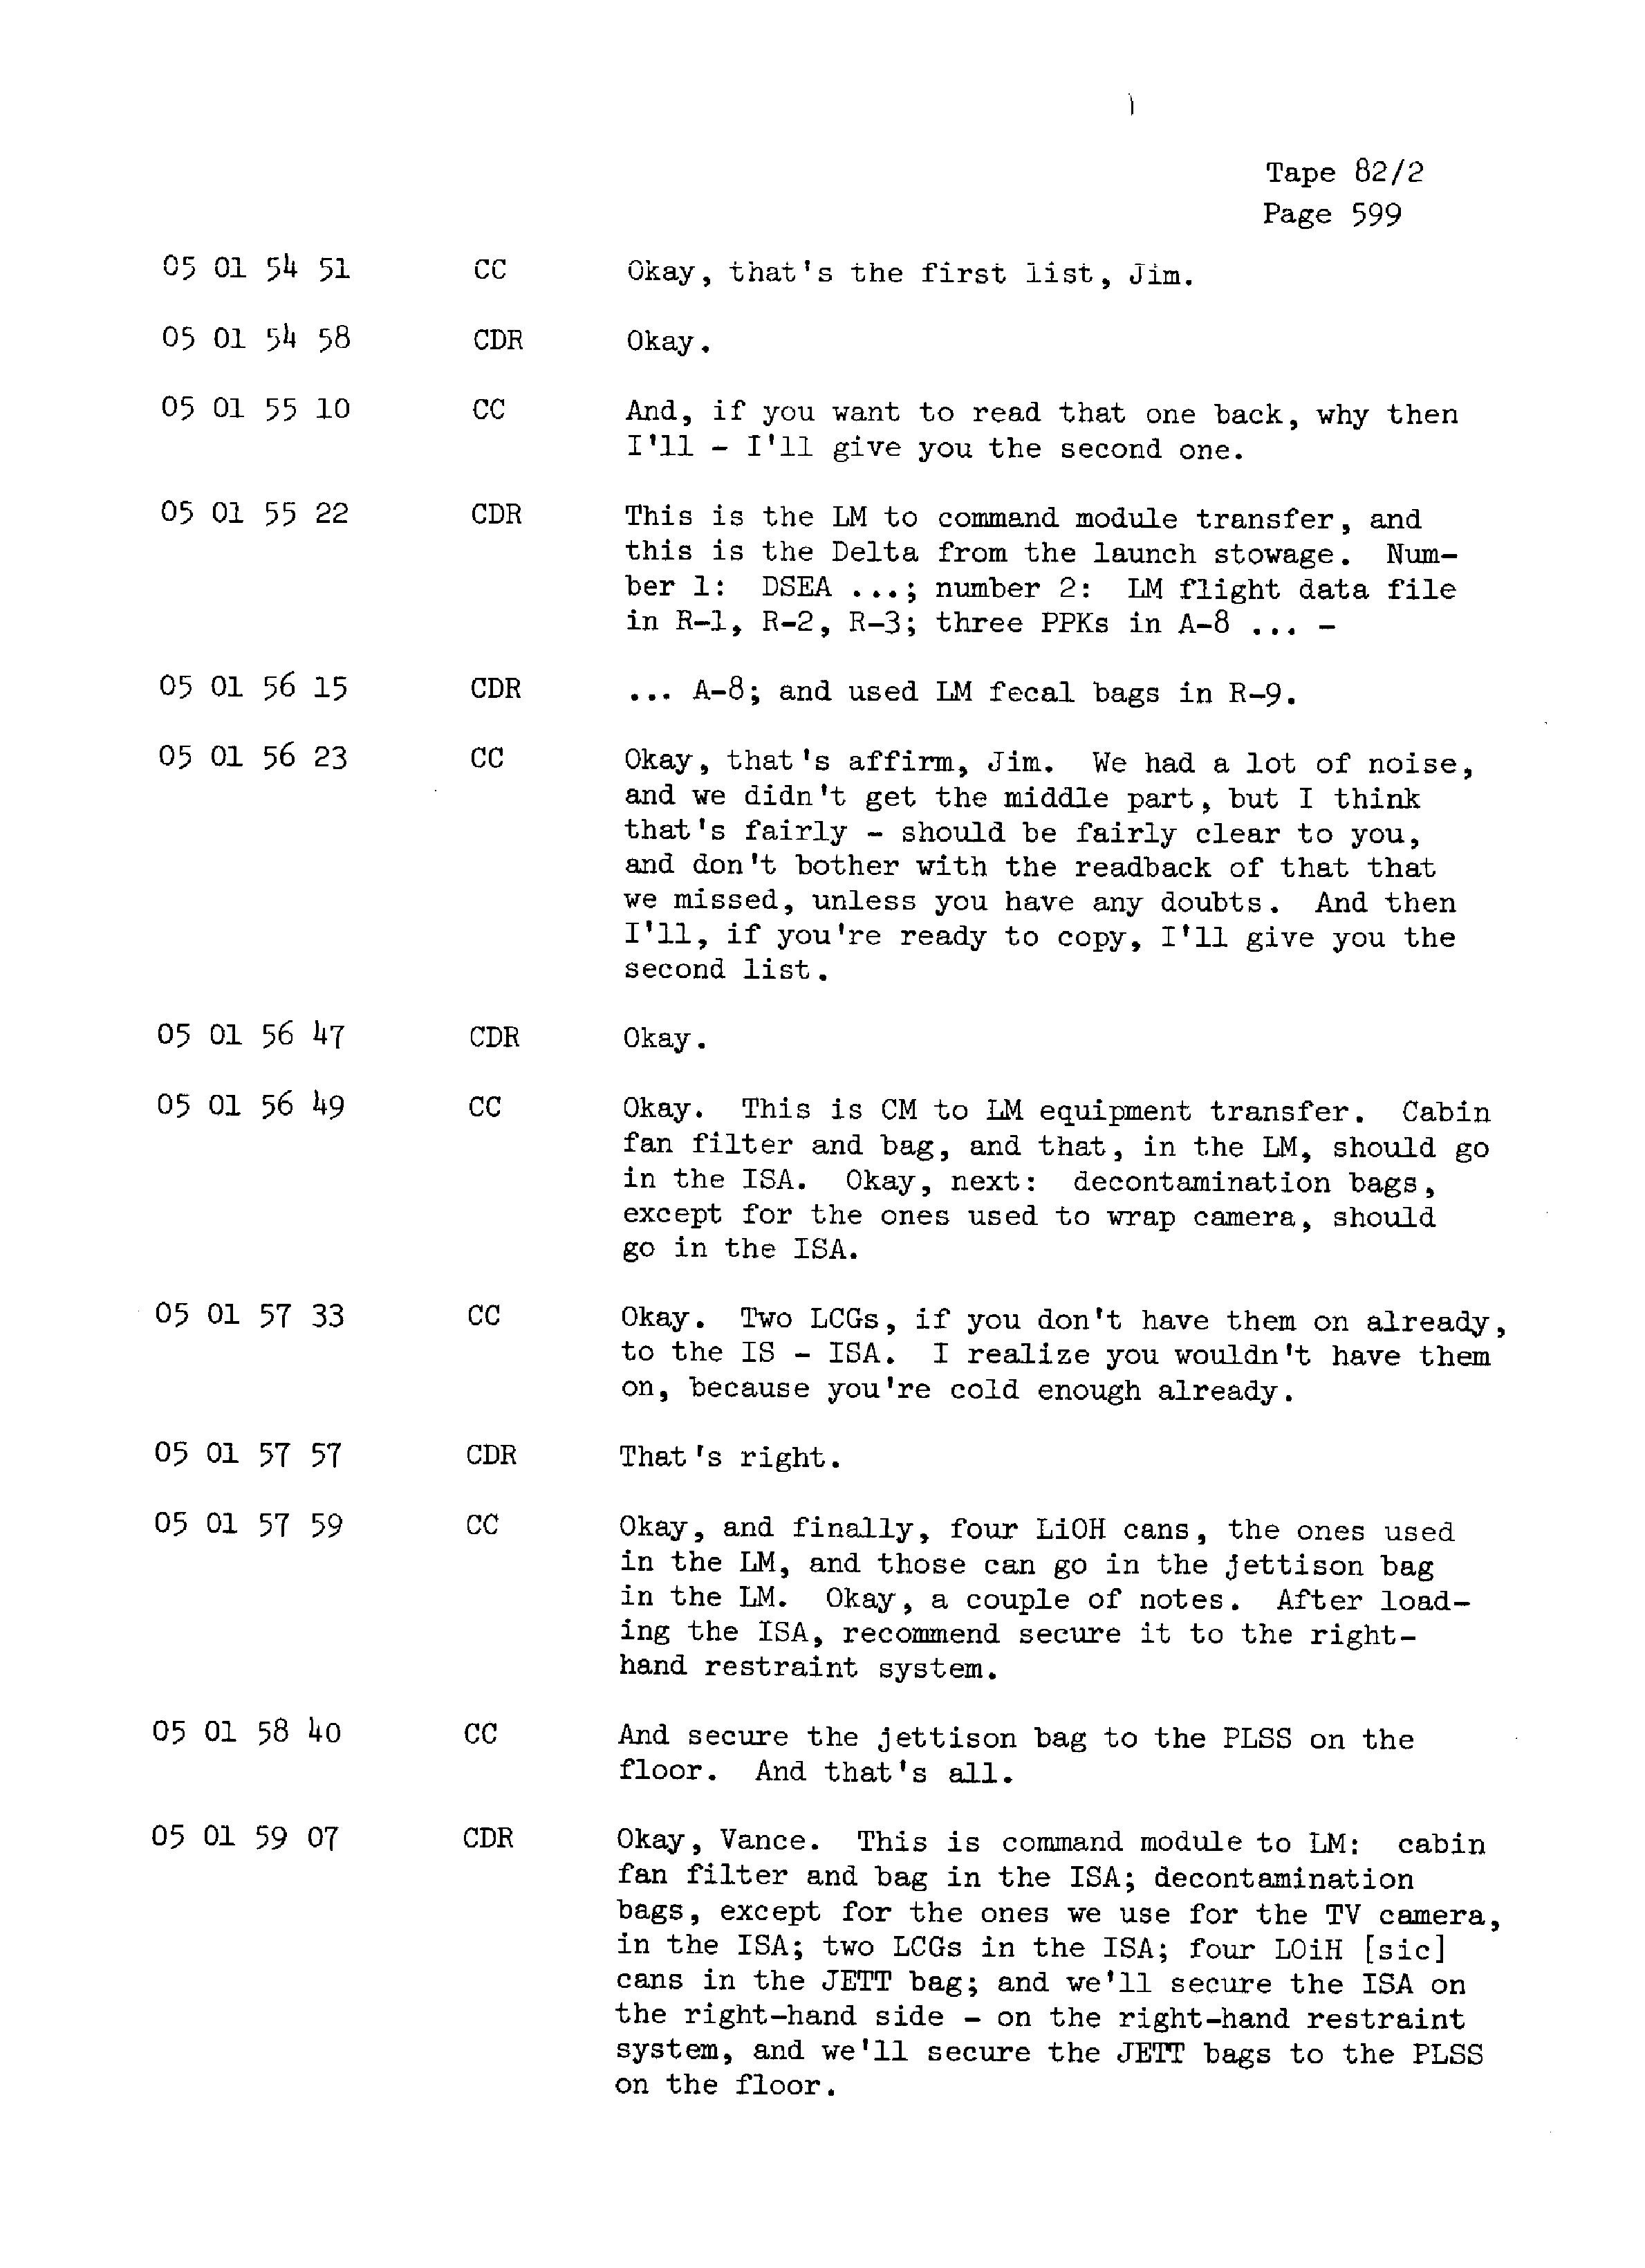 Page 606 of Apollo 13’s original transcript